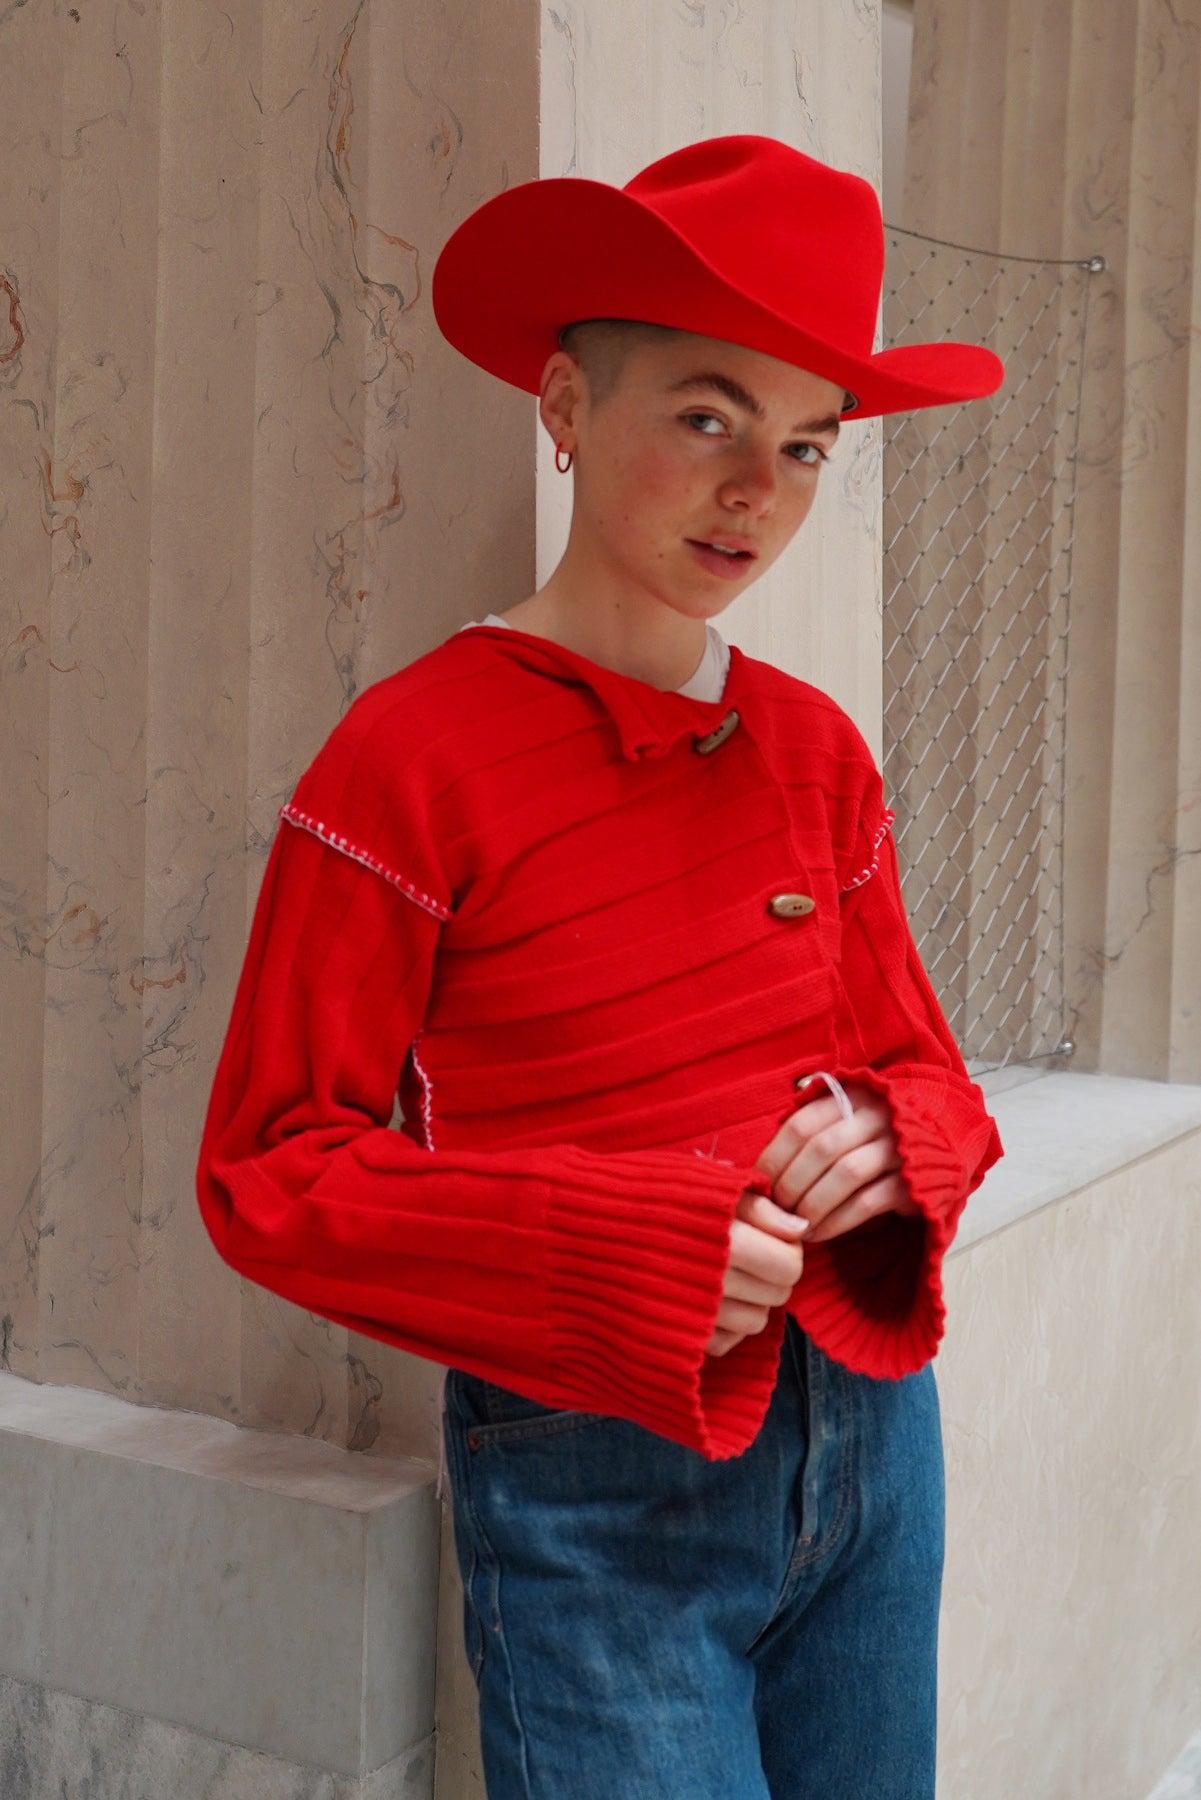 Unisex custom made red felt cowboy hat by SoonNoon